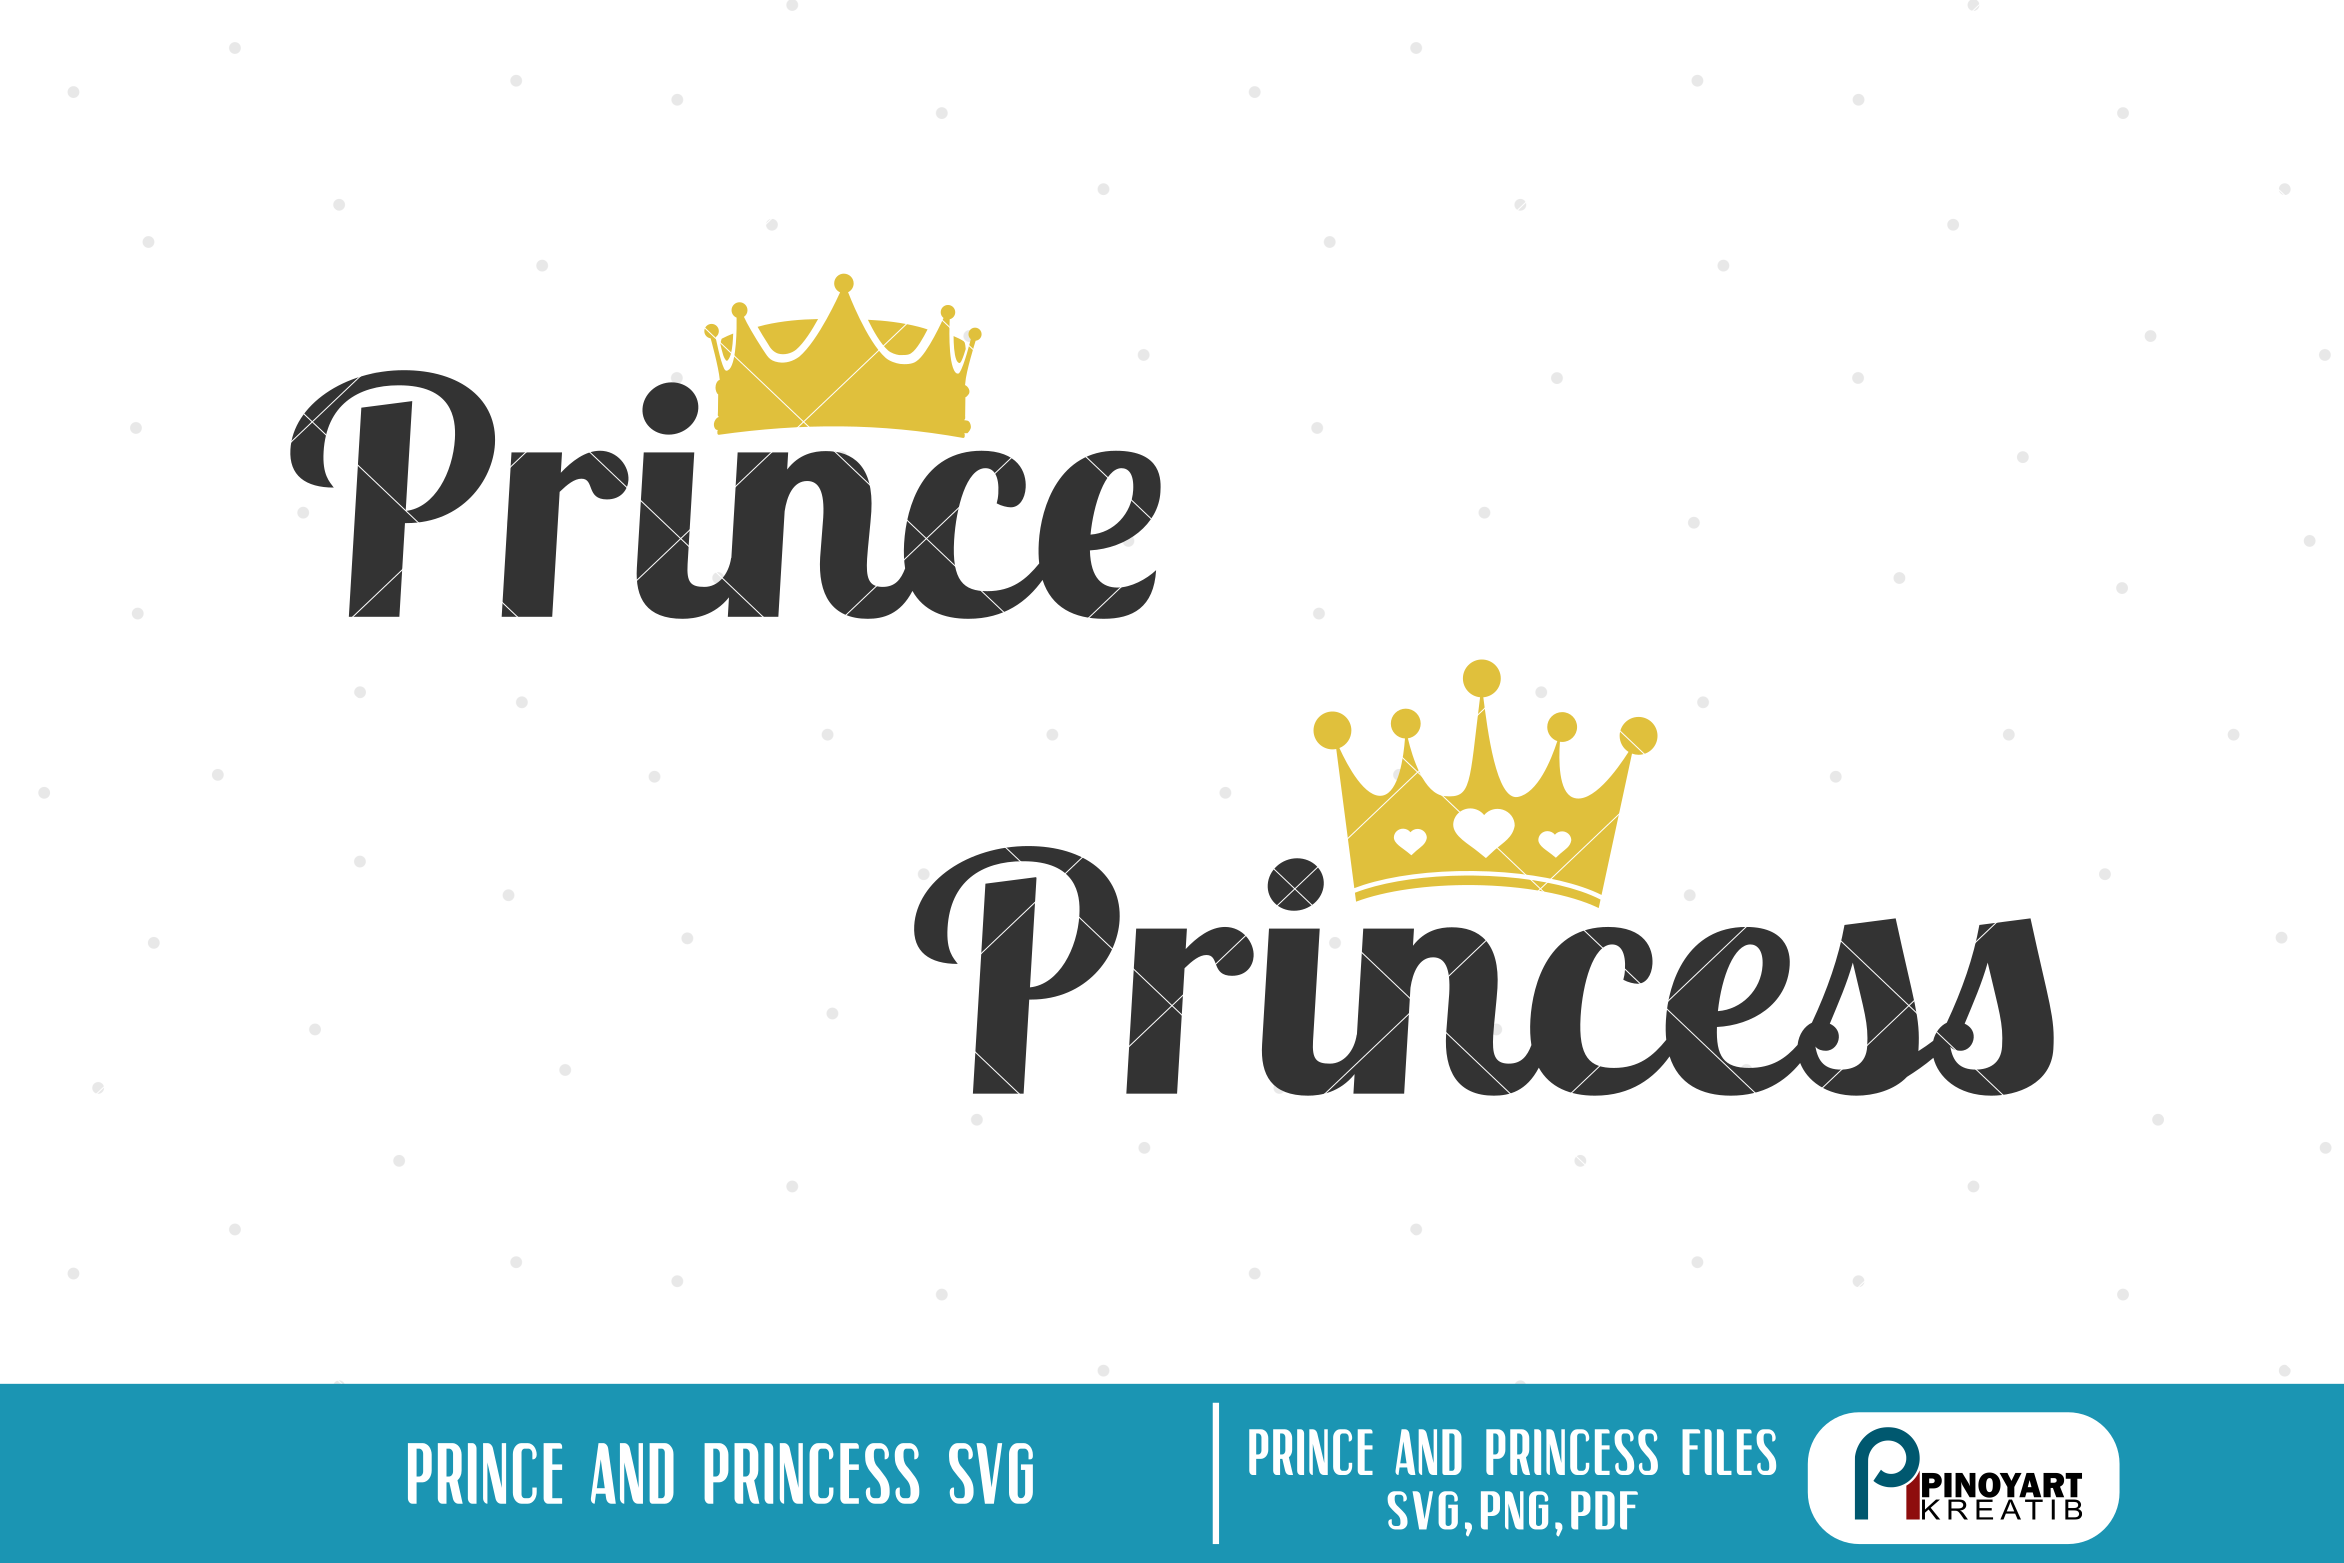 princess svg, princess svg file, prince svg, prince svg file